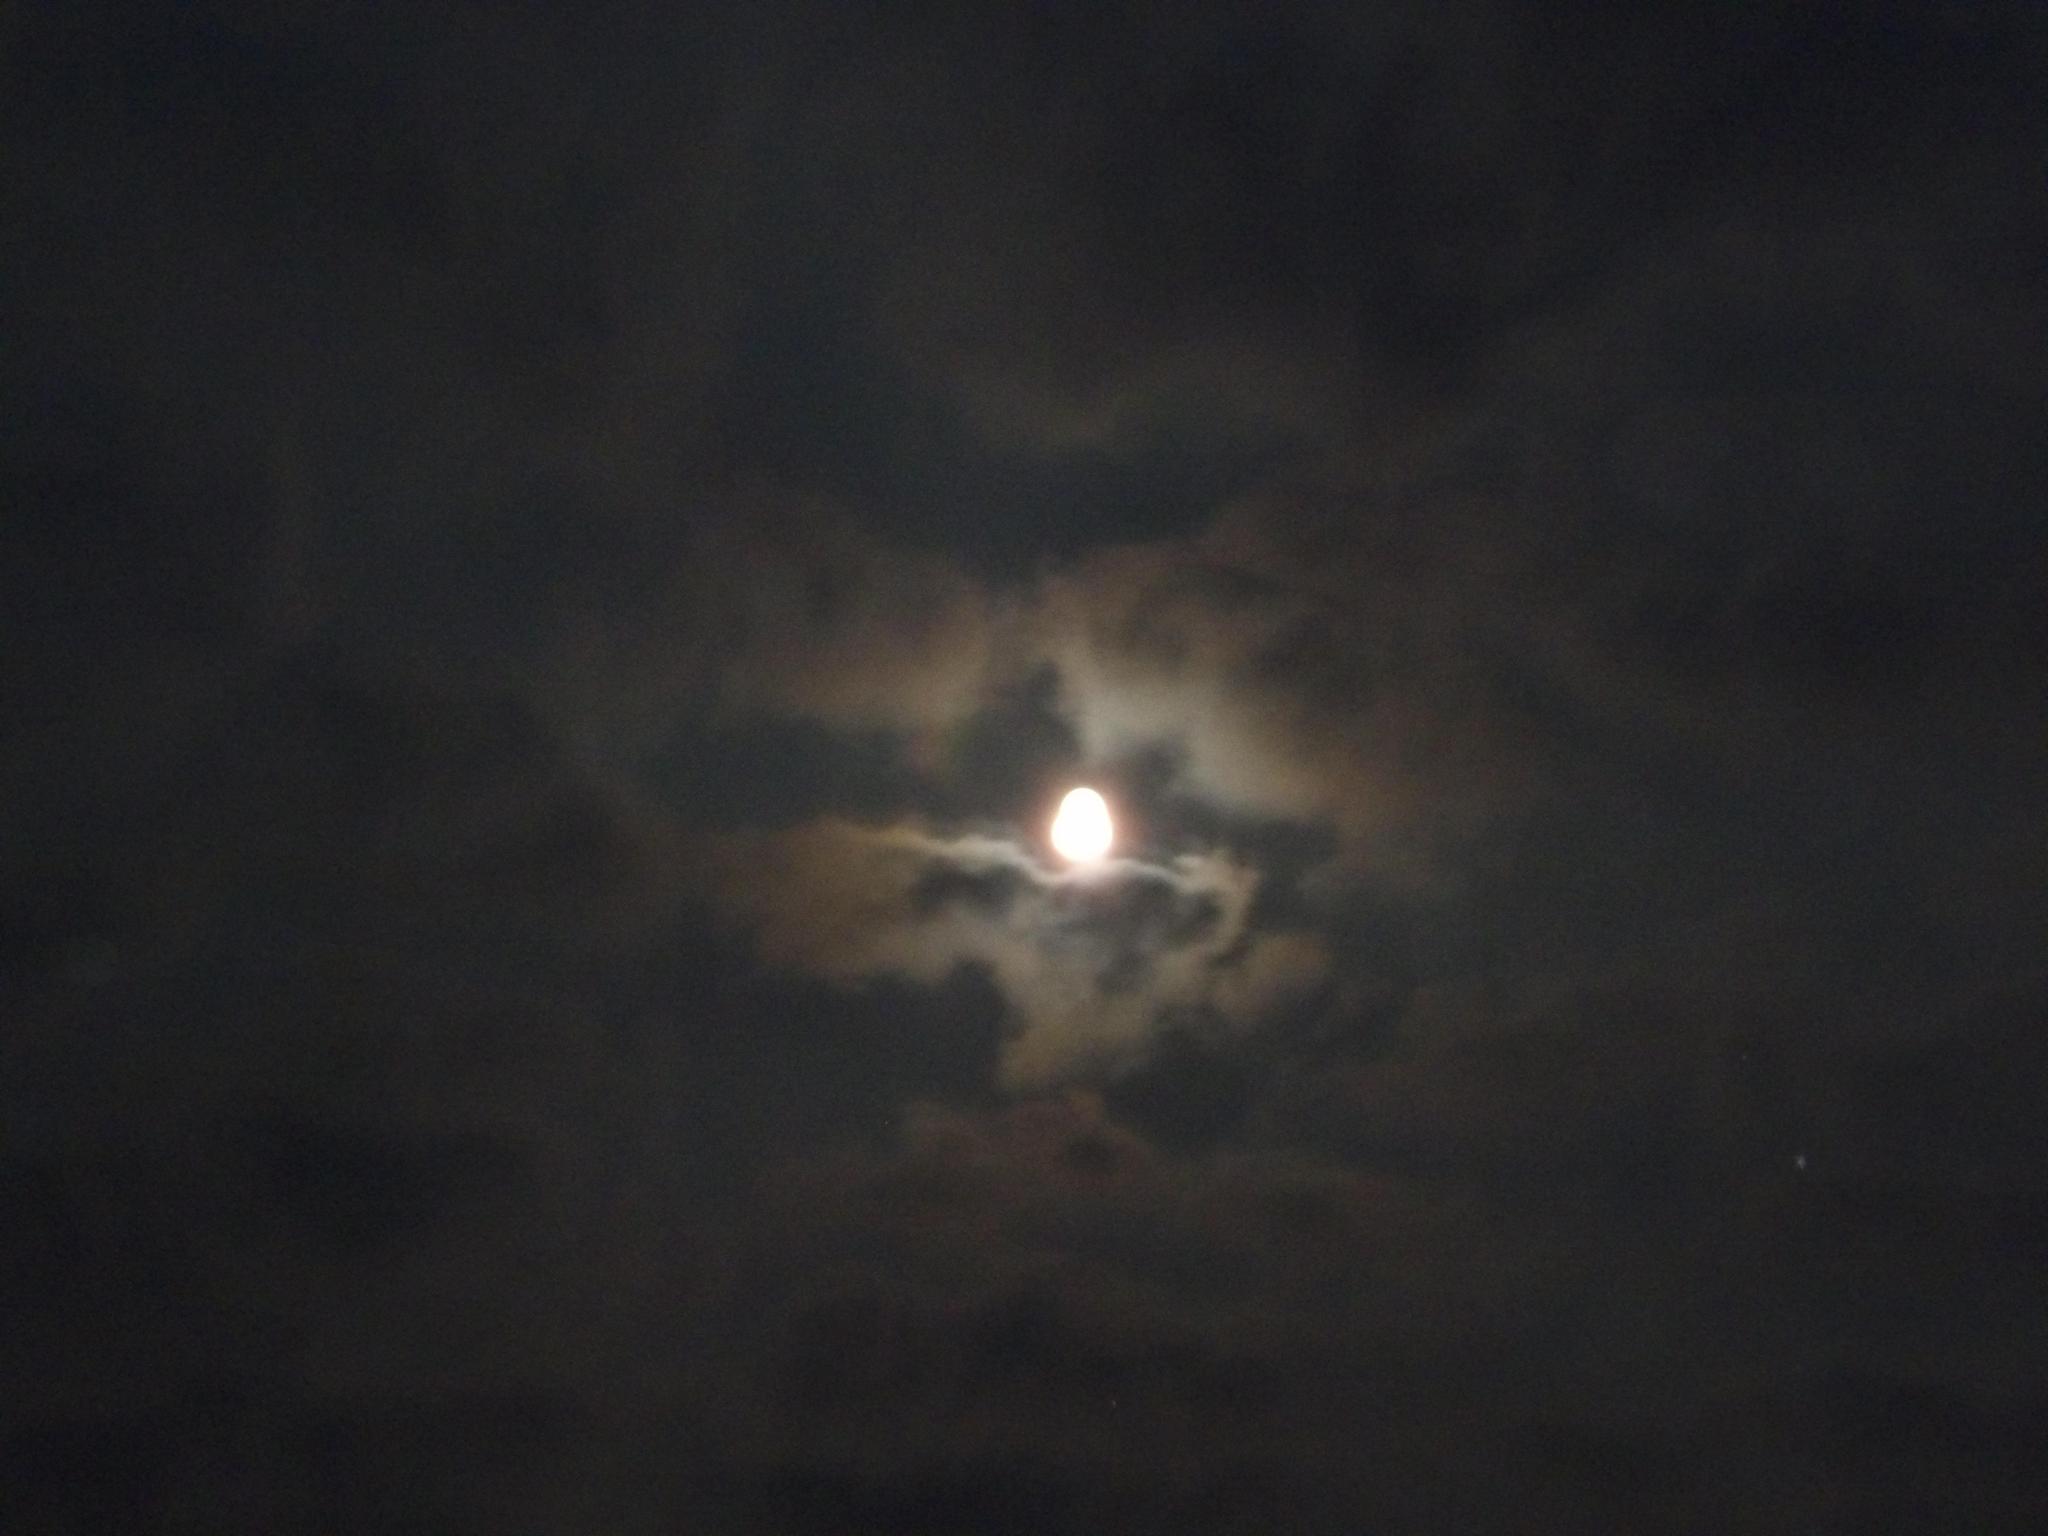 葫芦岛夜晚的天空被白云笼罩,漆黑的夜里只见一道白光